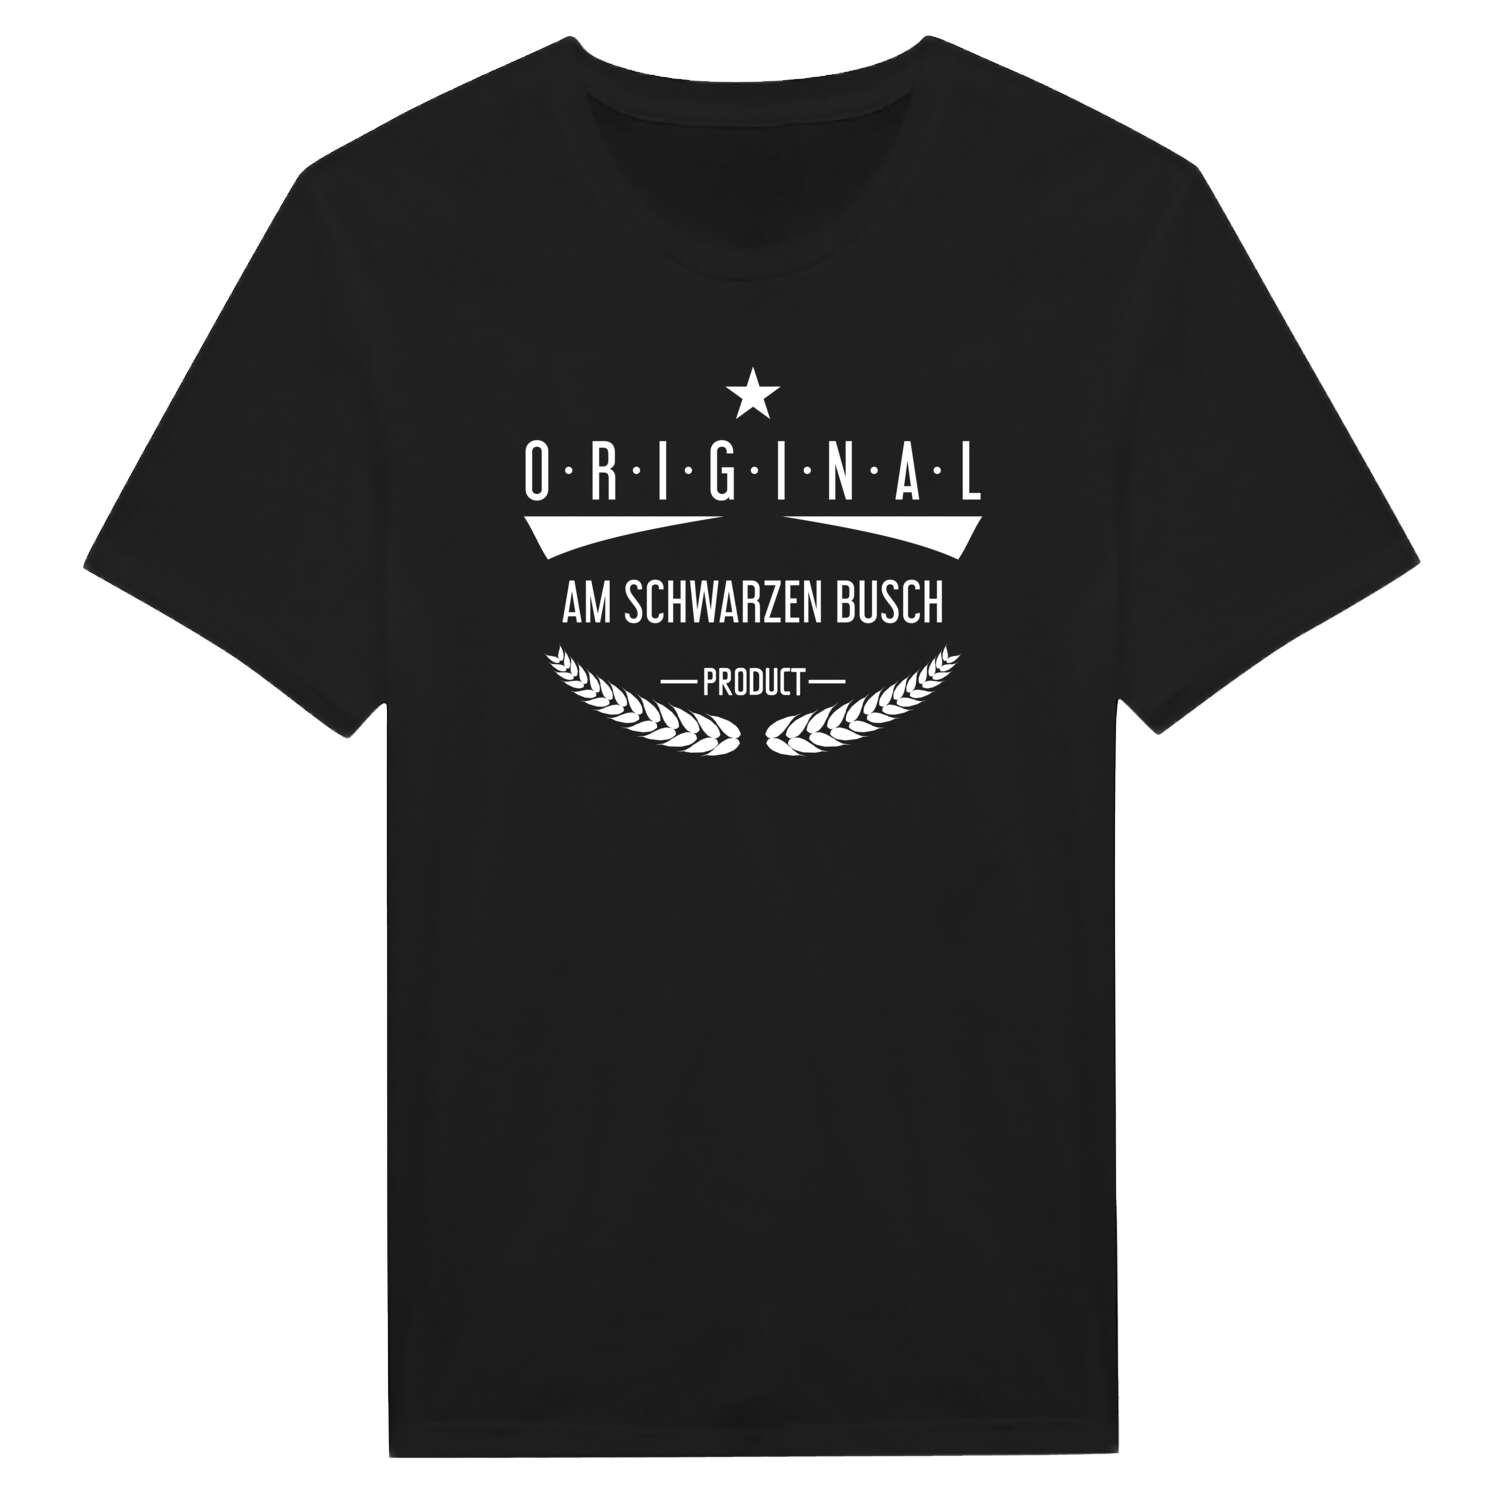 Am Schwarzen Busch T-Shirt »Original Product«